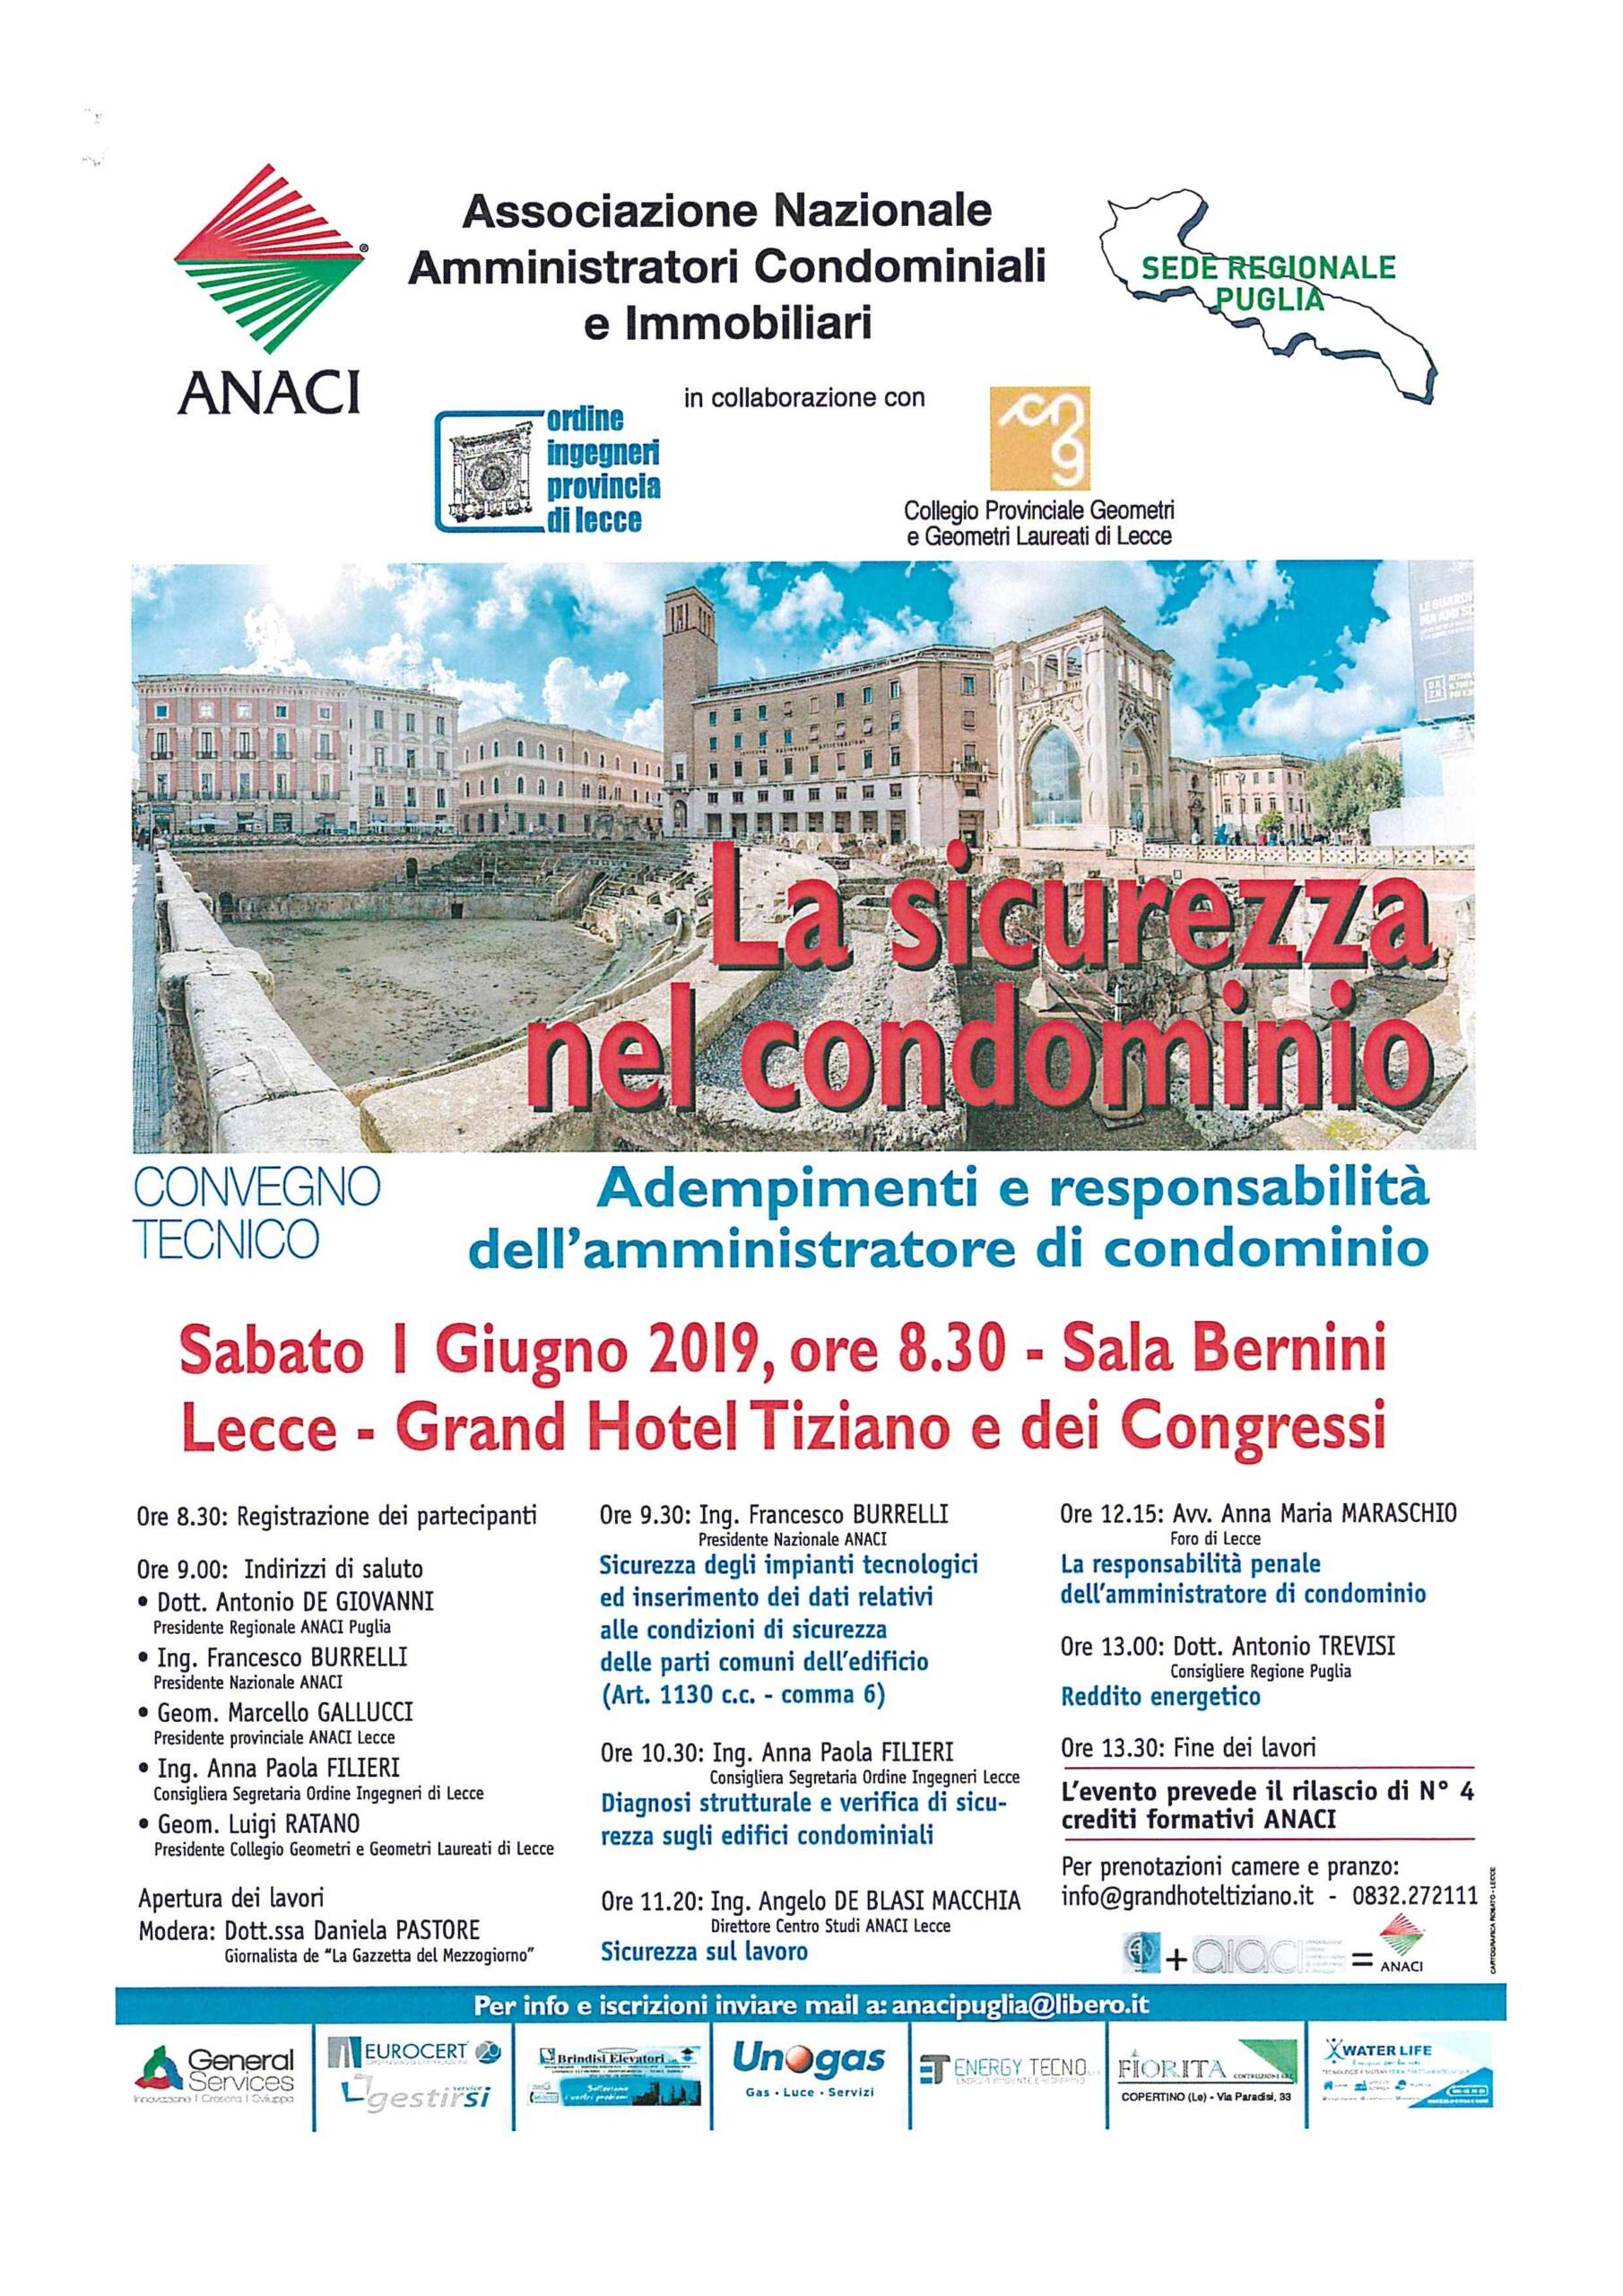 Convegno tecnico ANACI – La Sicurezza nel condominio. Adempimenti e responsabilità dell’amministratore di condominio – Lecce 01/06/2019